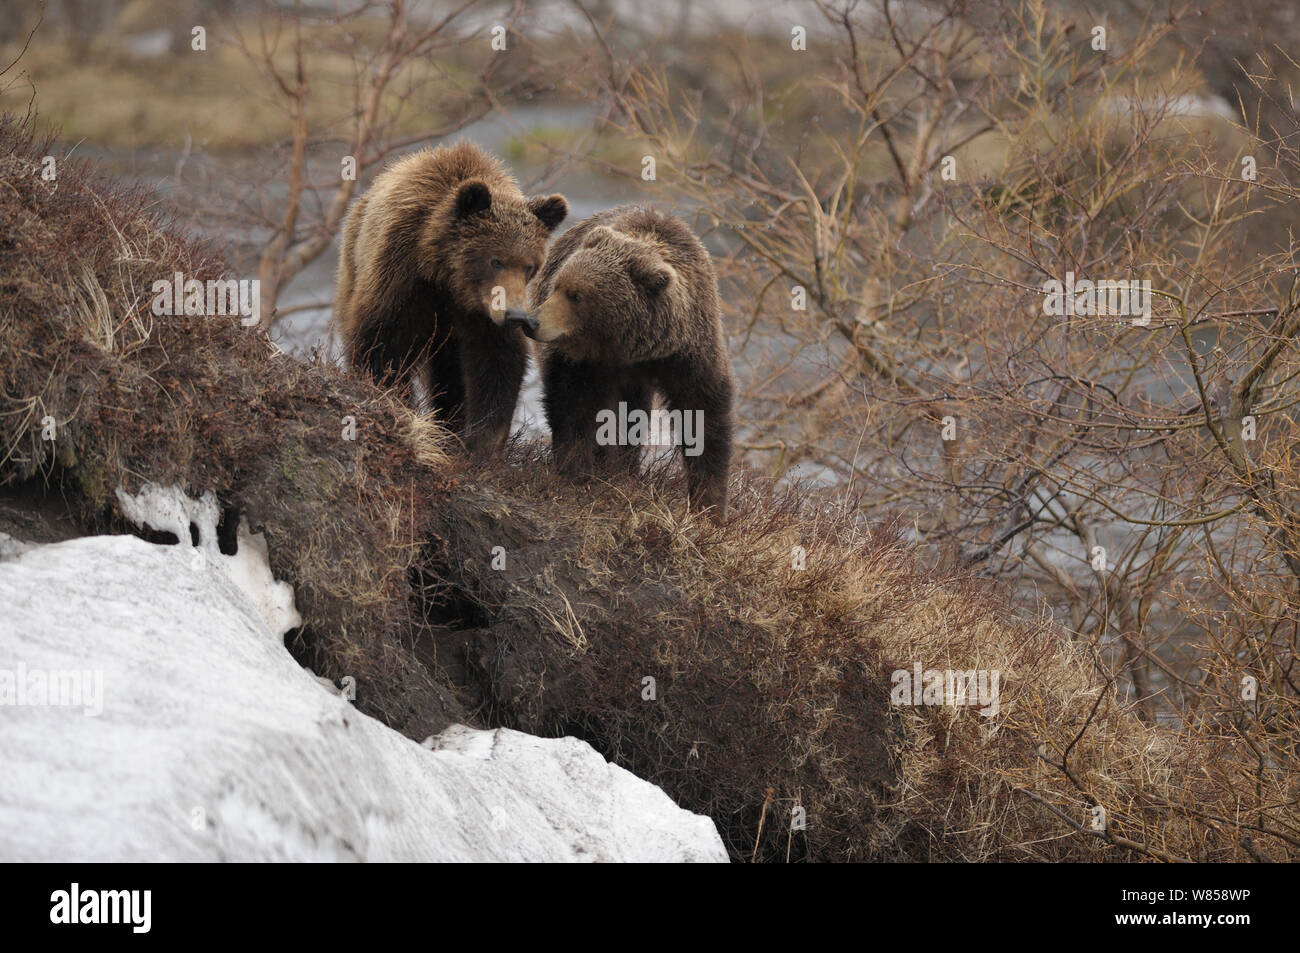 L'ours brun du Kamtchatka (Ursus arctos beringianus) de l'interaction. La réserve naturelle de Kronotsky Zapovednik, péninsule du Kamchatka, Extrême-Orient russe, juillet. Banque D'Images